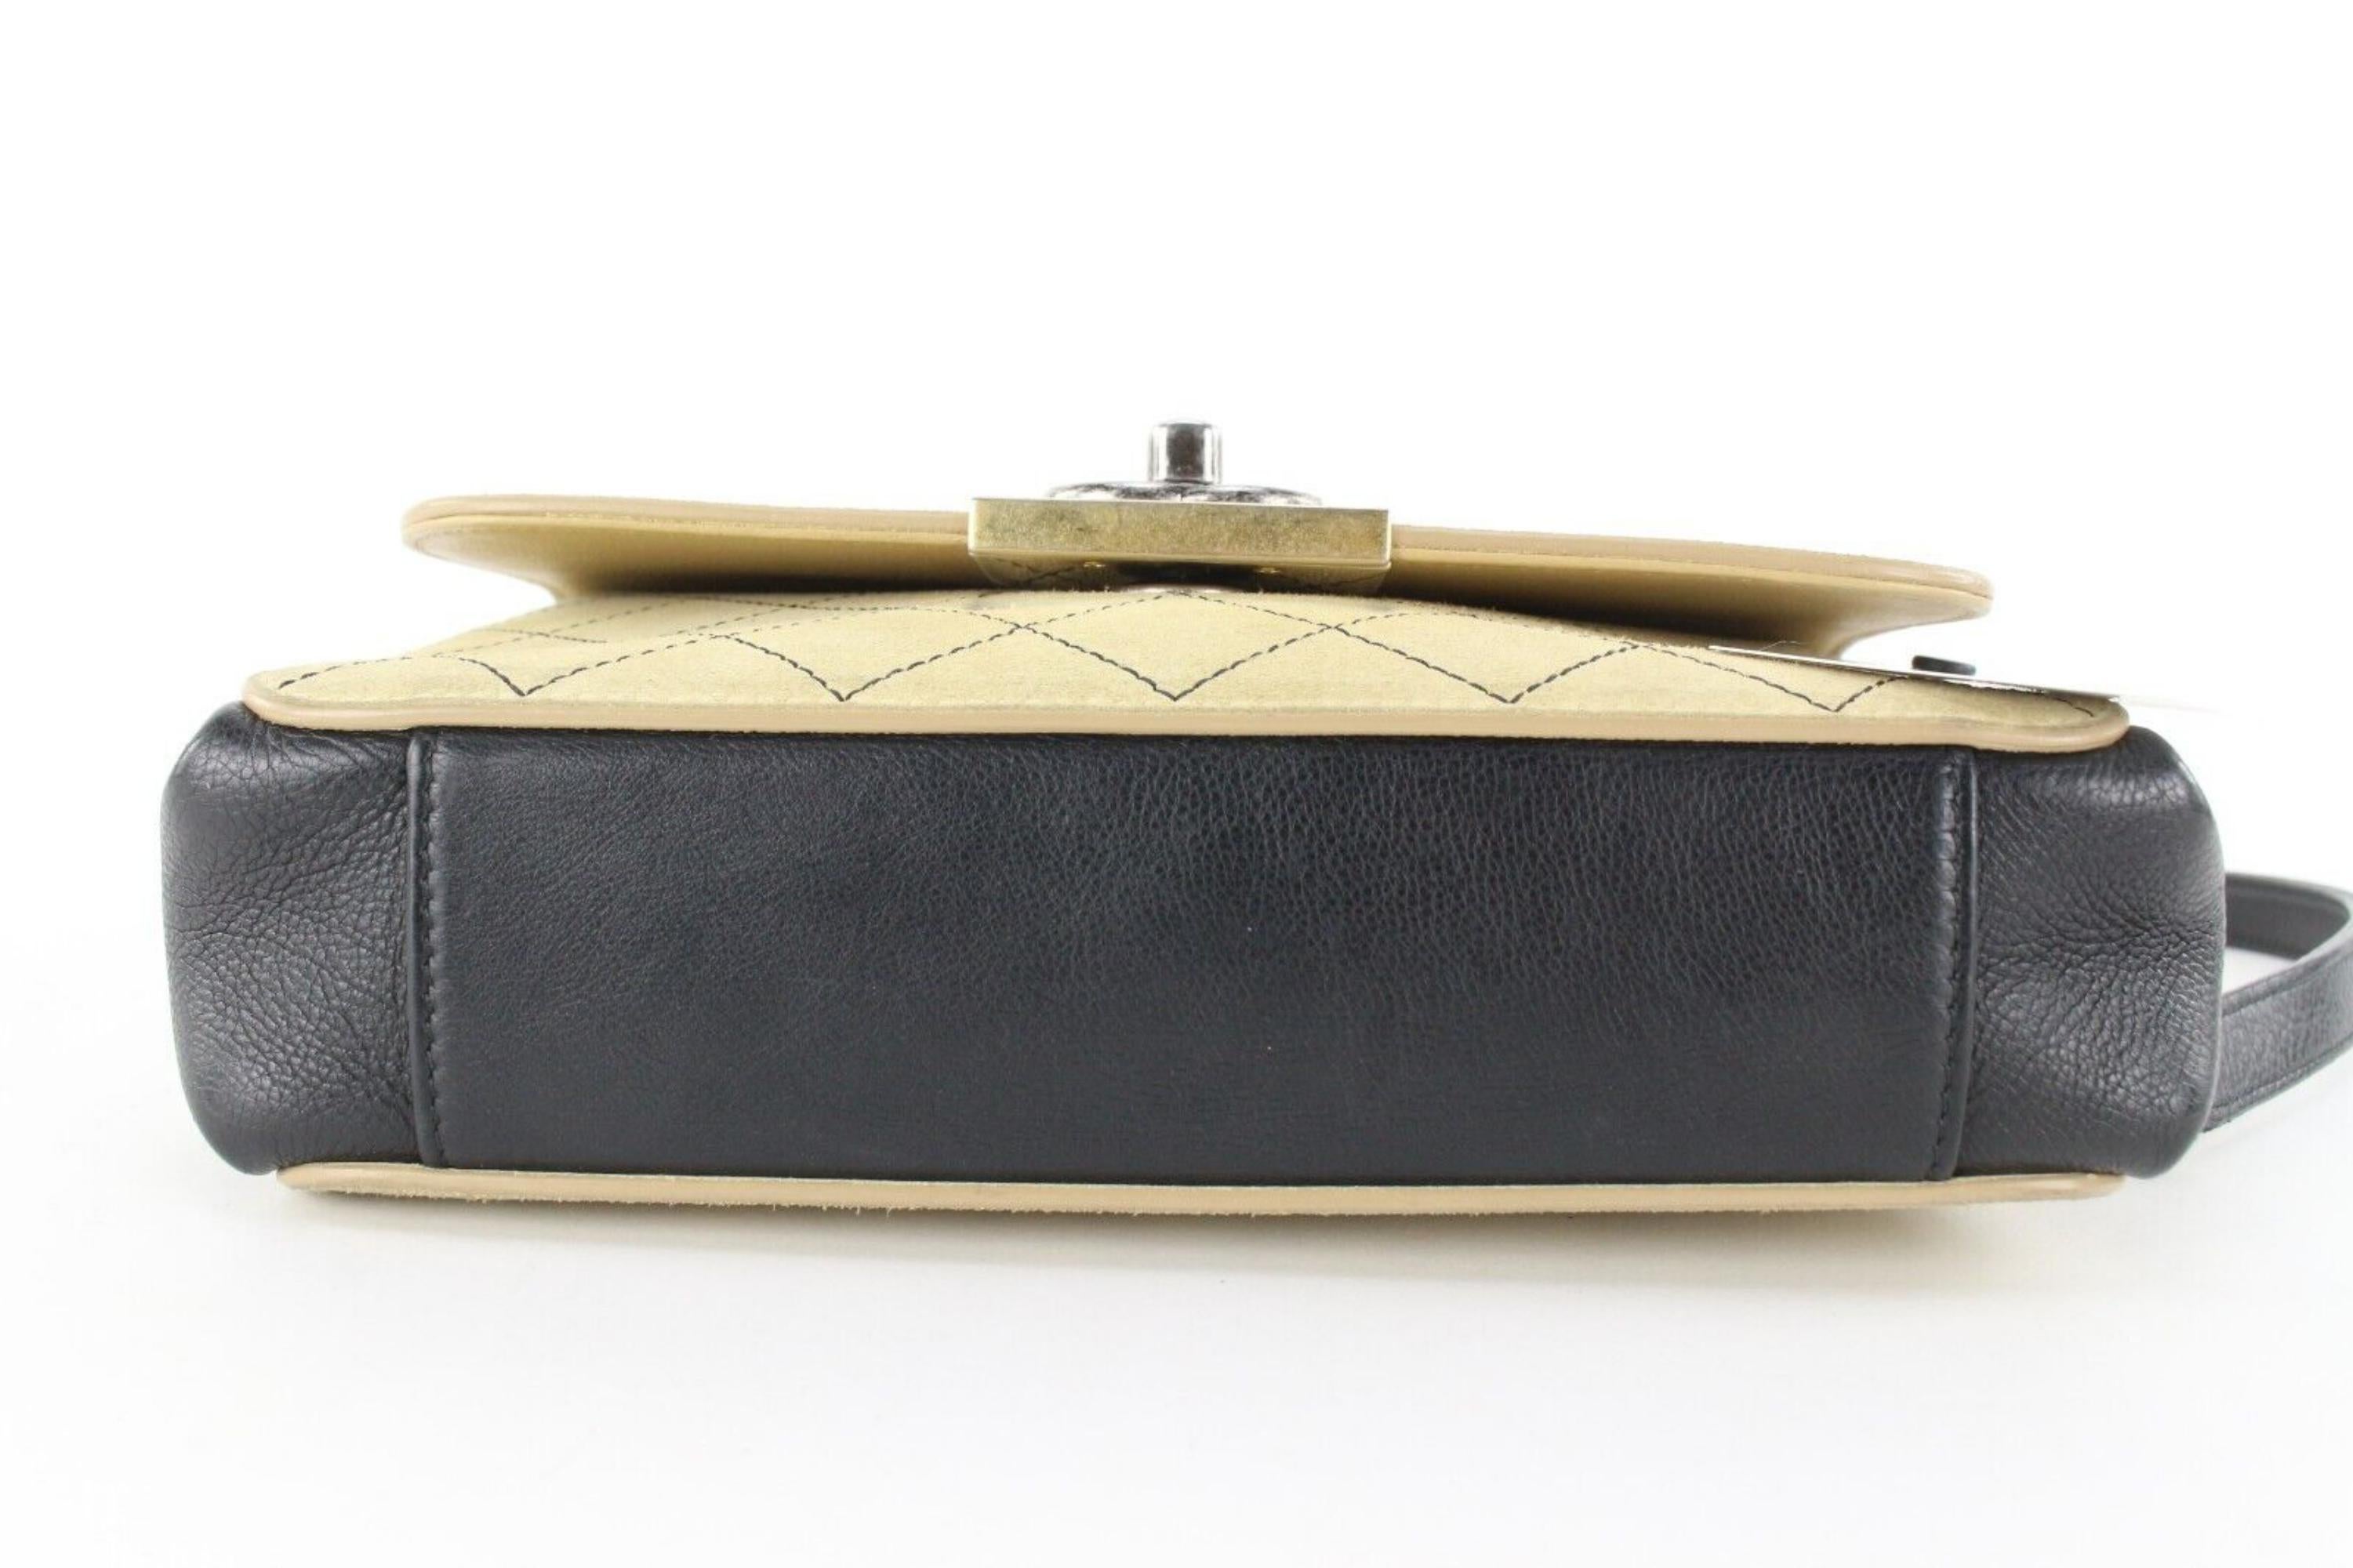 Chanel Beige gesteppt Wildleder x Schwarz Leder Classic Flap Tasche 2CC1202
Datum Code/Seriennummer: 23258061

Hergestellt in: Italien

Maße: Länge:  9